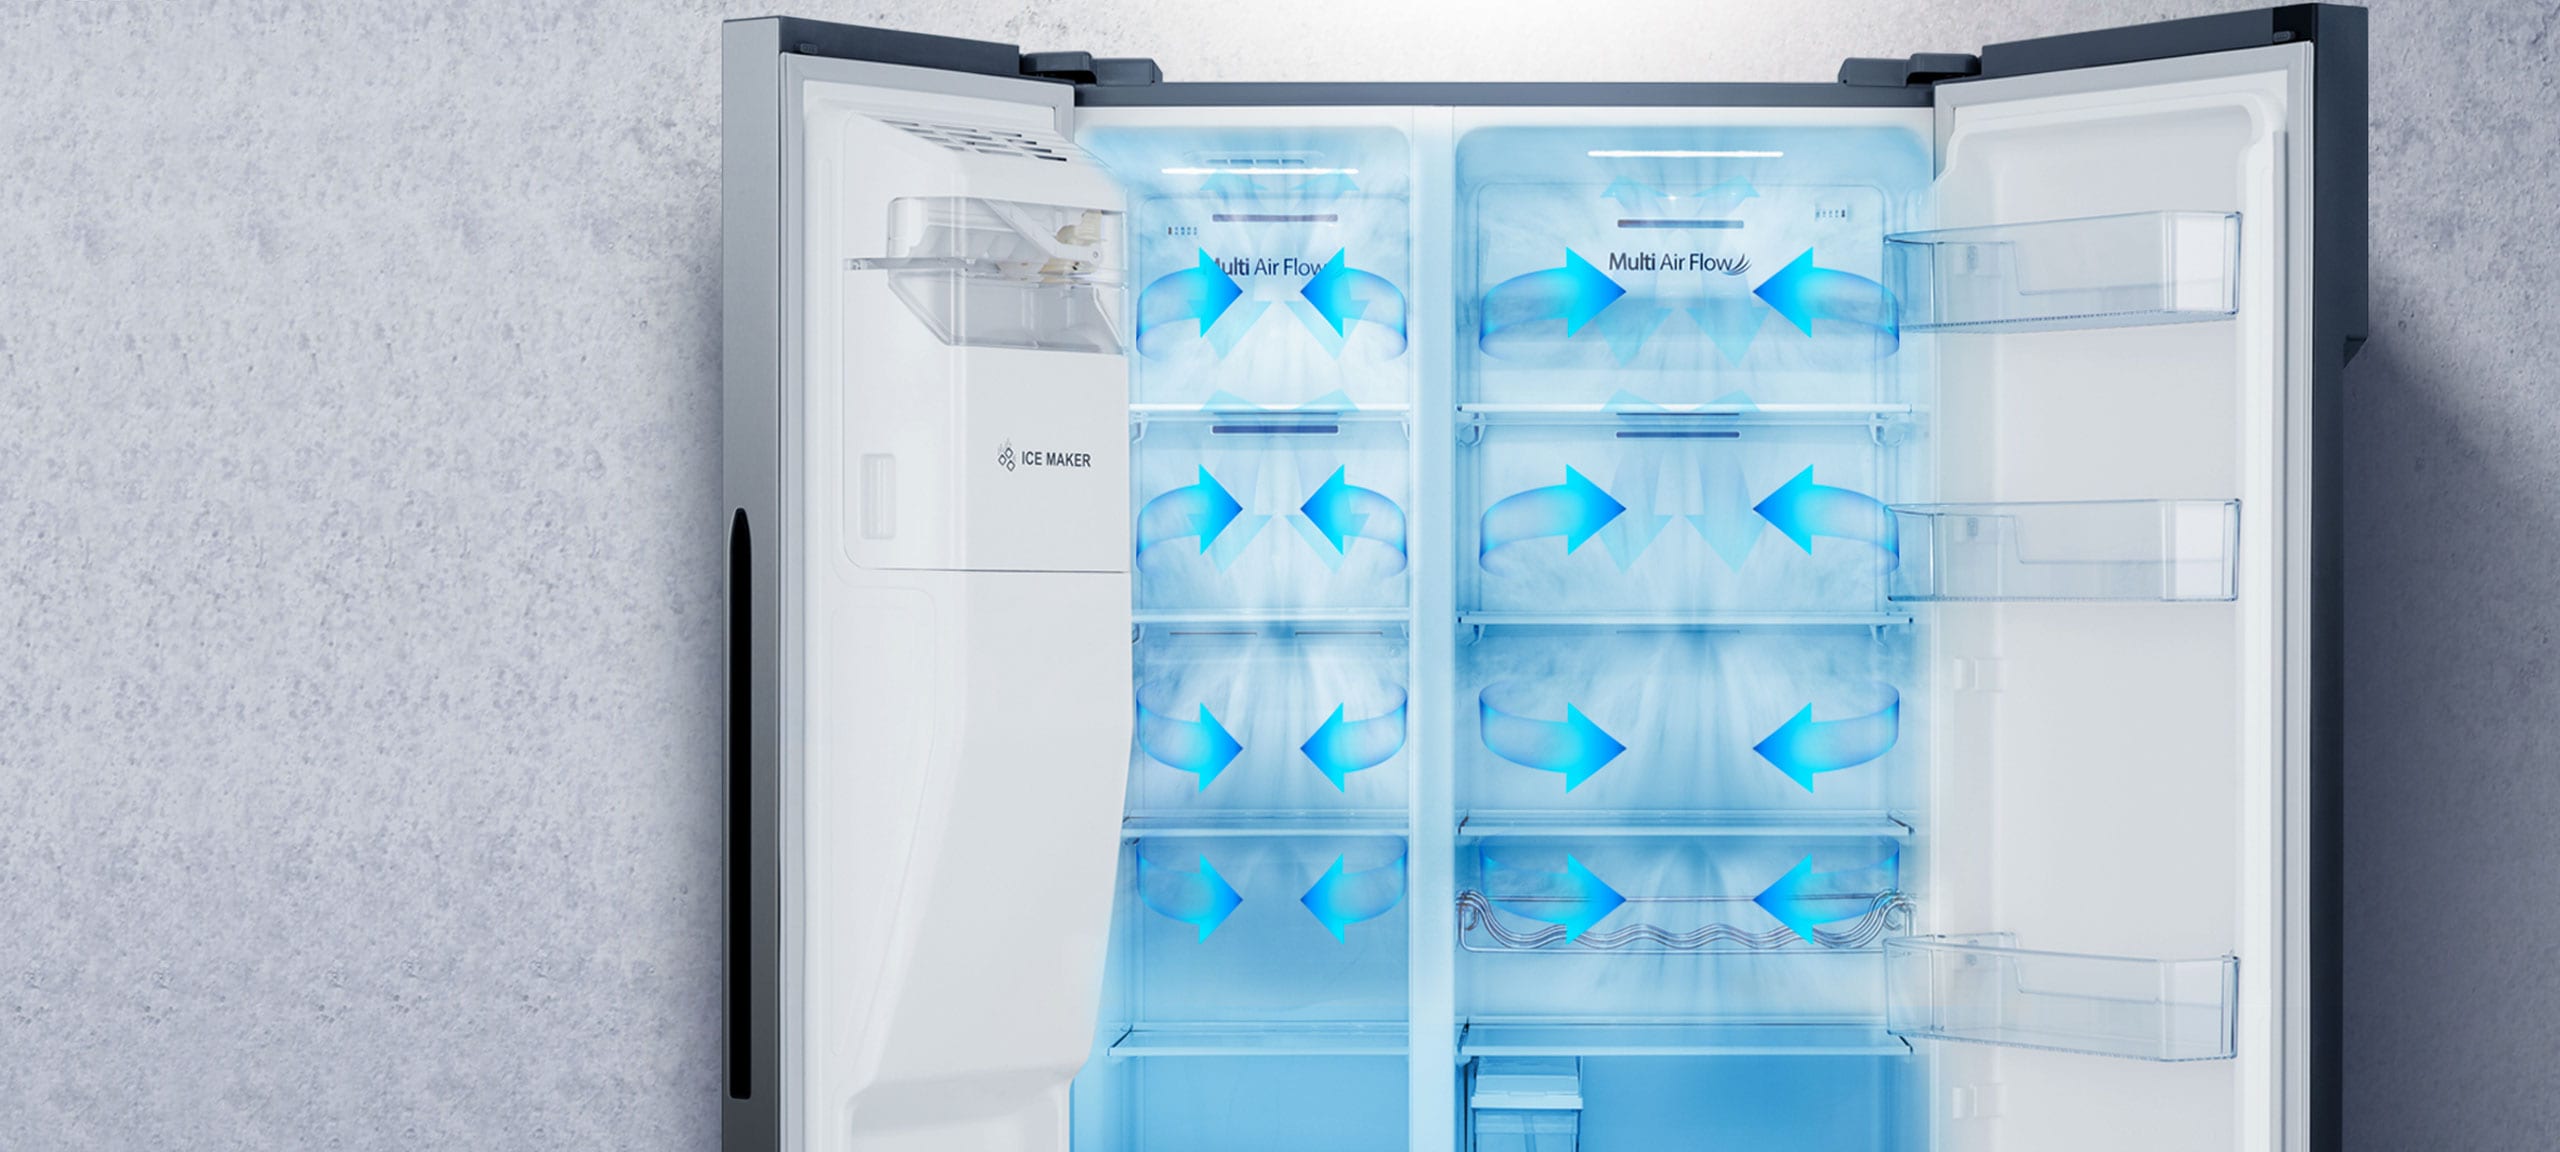 Réfrigérateur multiportes RQ689N4AC1, Hisense